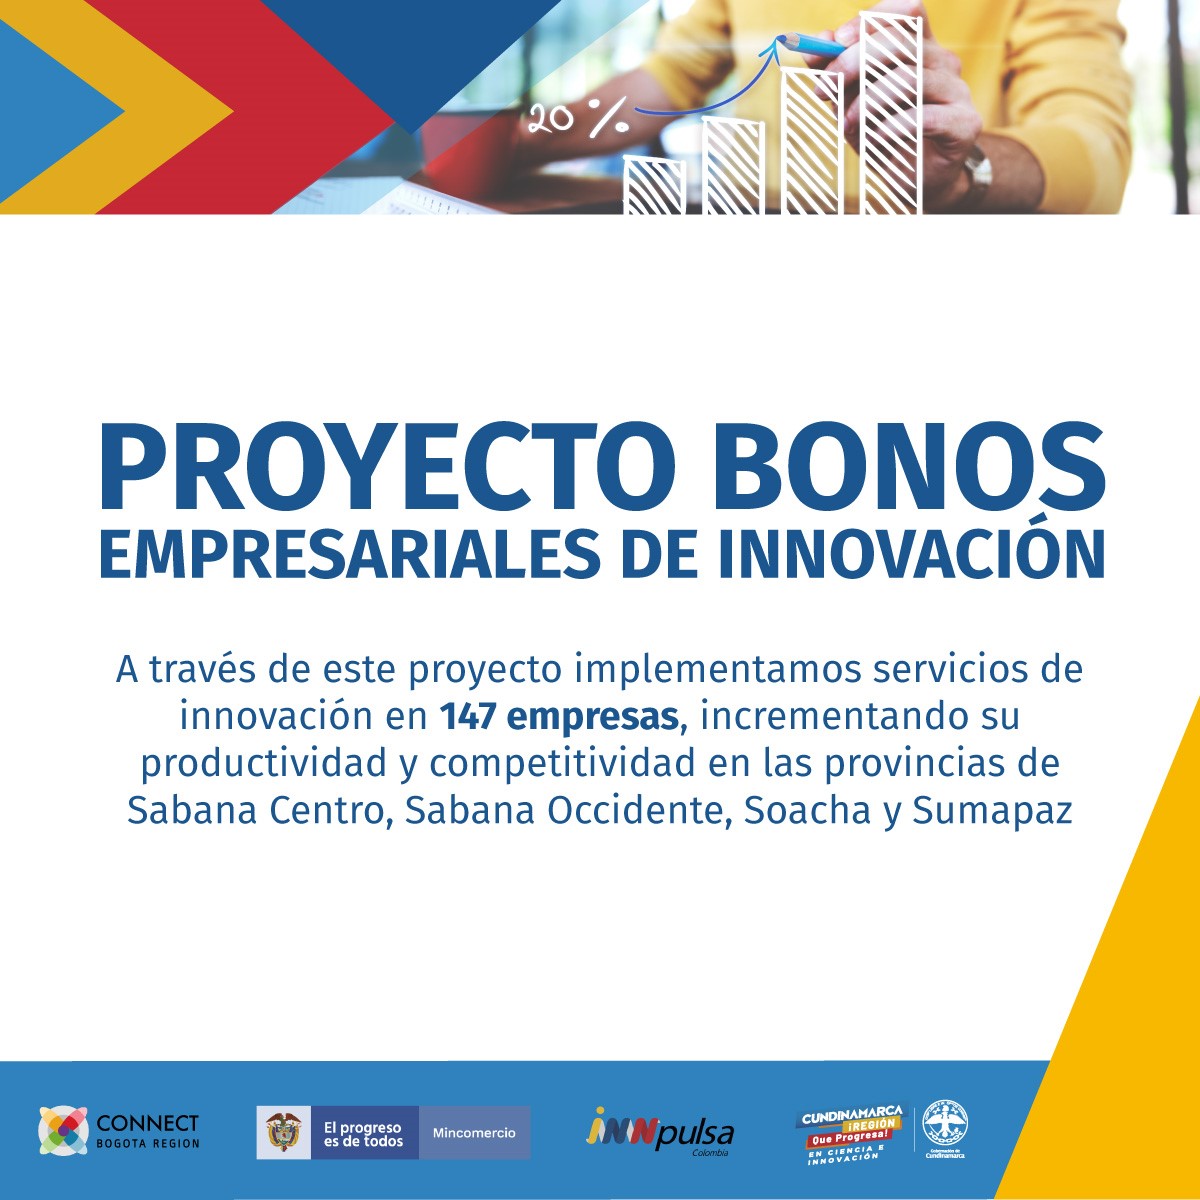 Bonos Empresariales de Innovación - INNPULSA “Implementación de Estrategias de Fomento a la Cultura y Servicios de Innovación en las Provincias Sabana Occidente, Sabana Centro, Soacha y Sumapaz Cundinamarca”